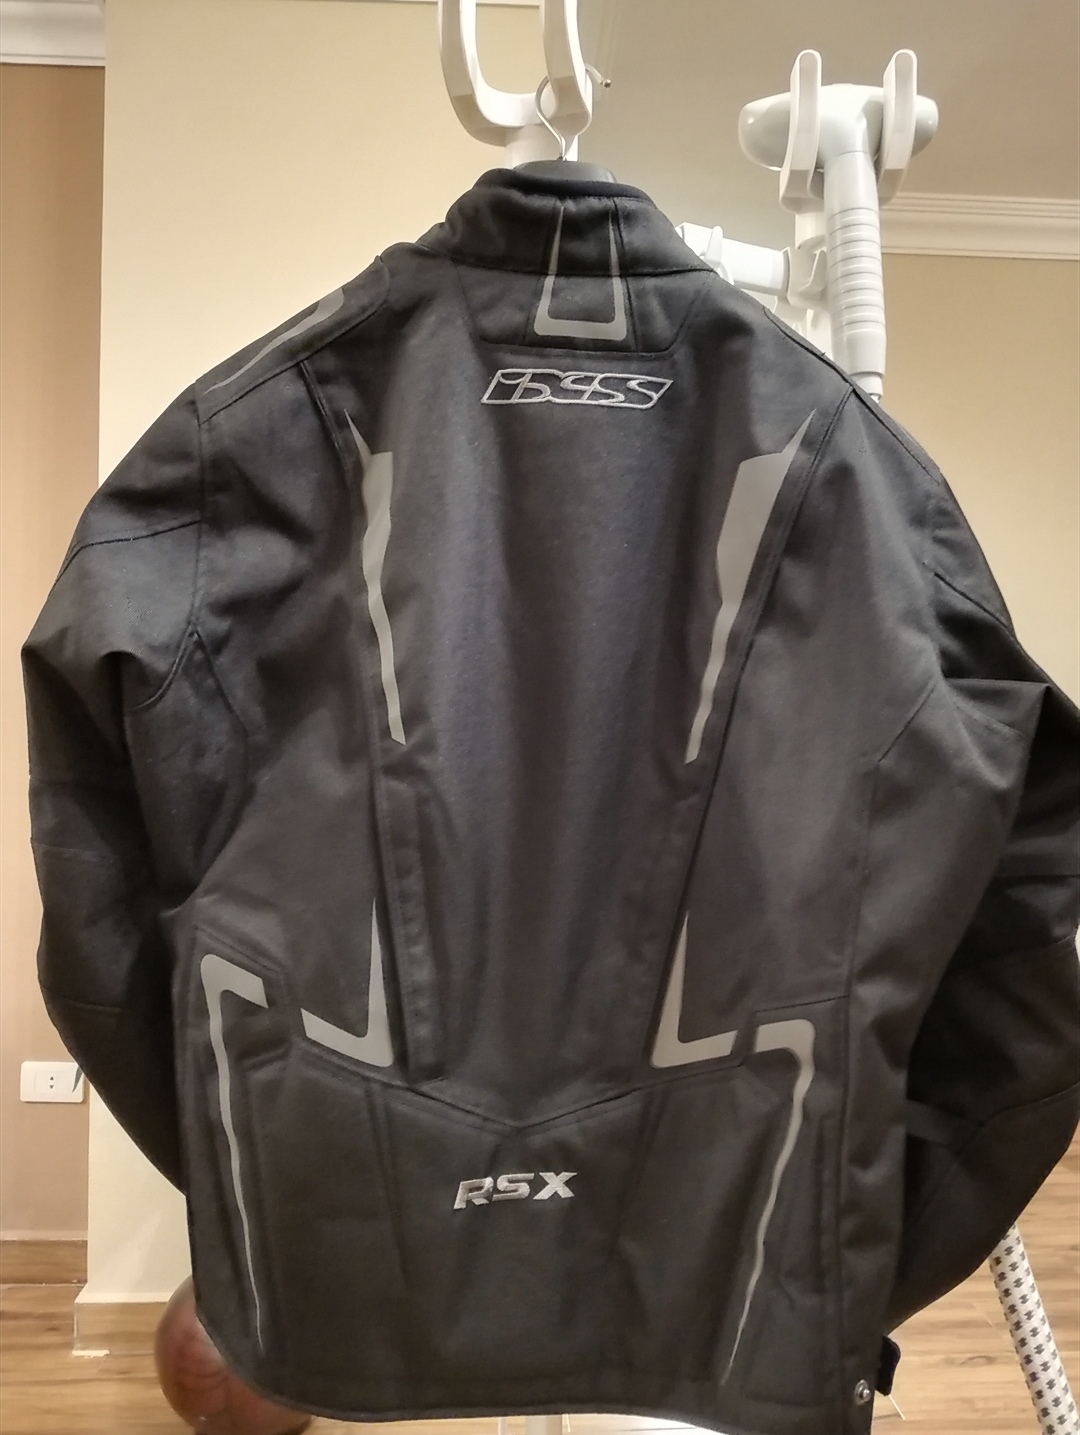 IXS -  Jacket - IXS safety jacket